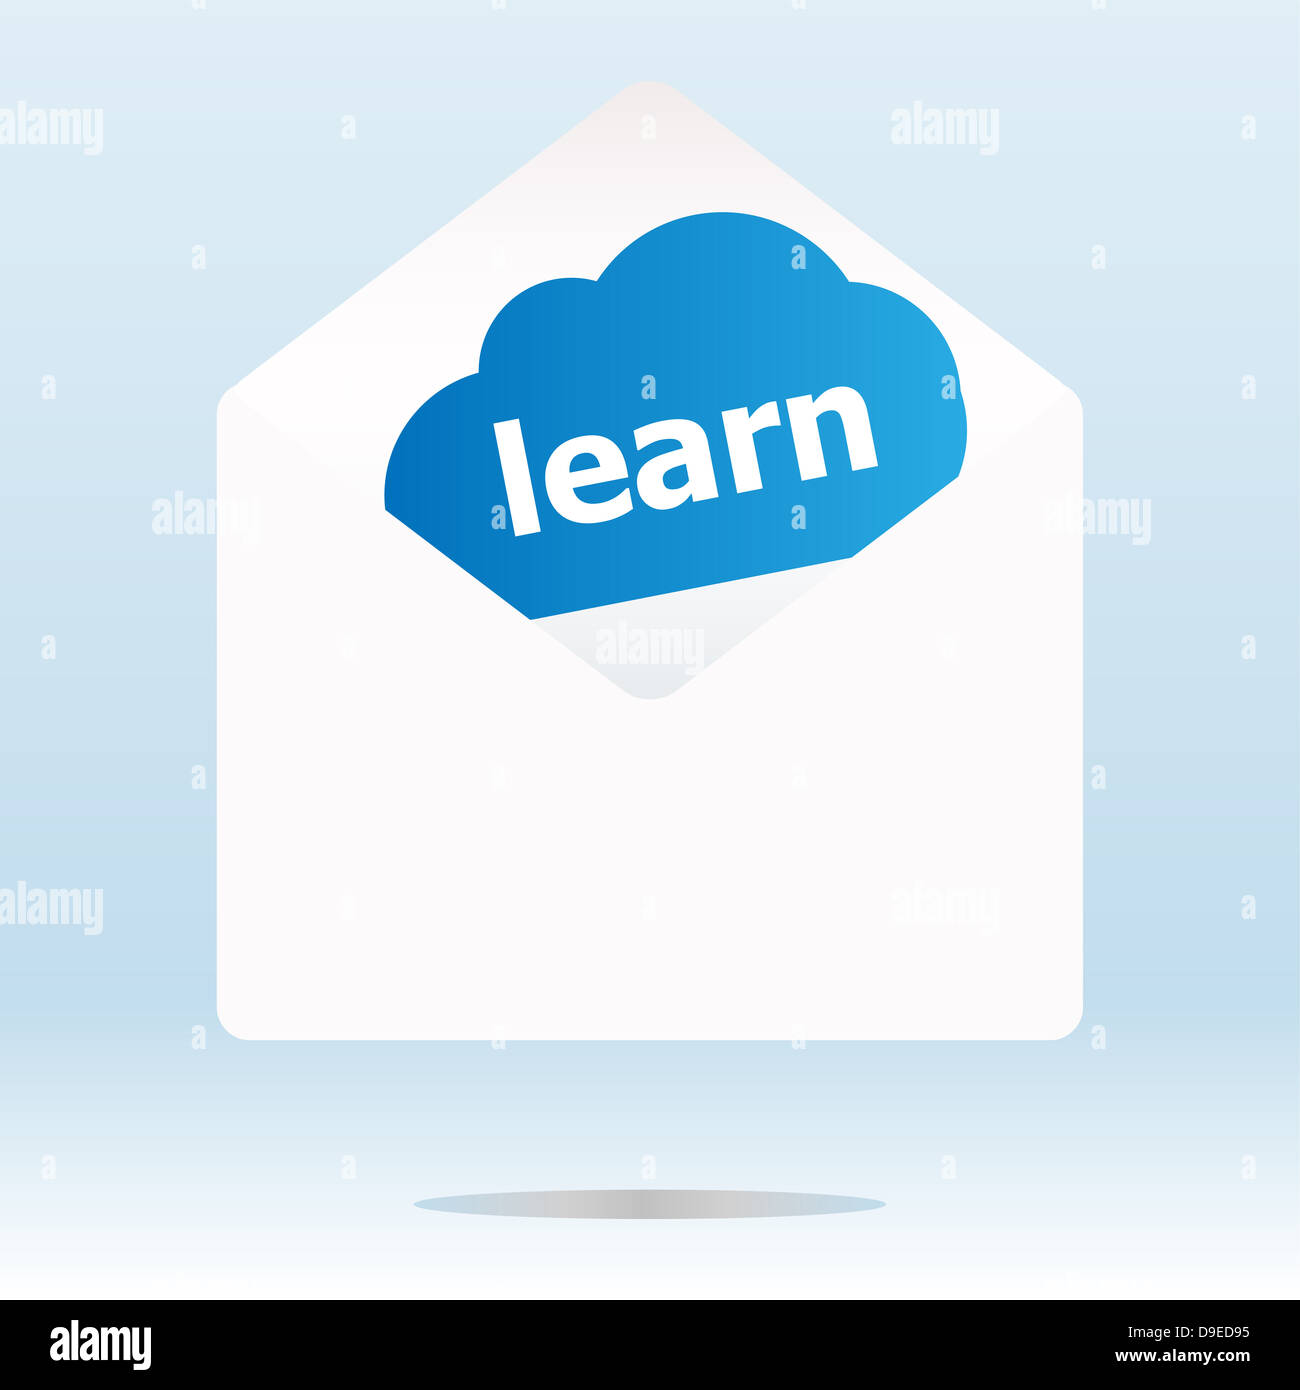 Apprendre word sur blue cloud, papier enveloppe poste Banque D'Images